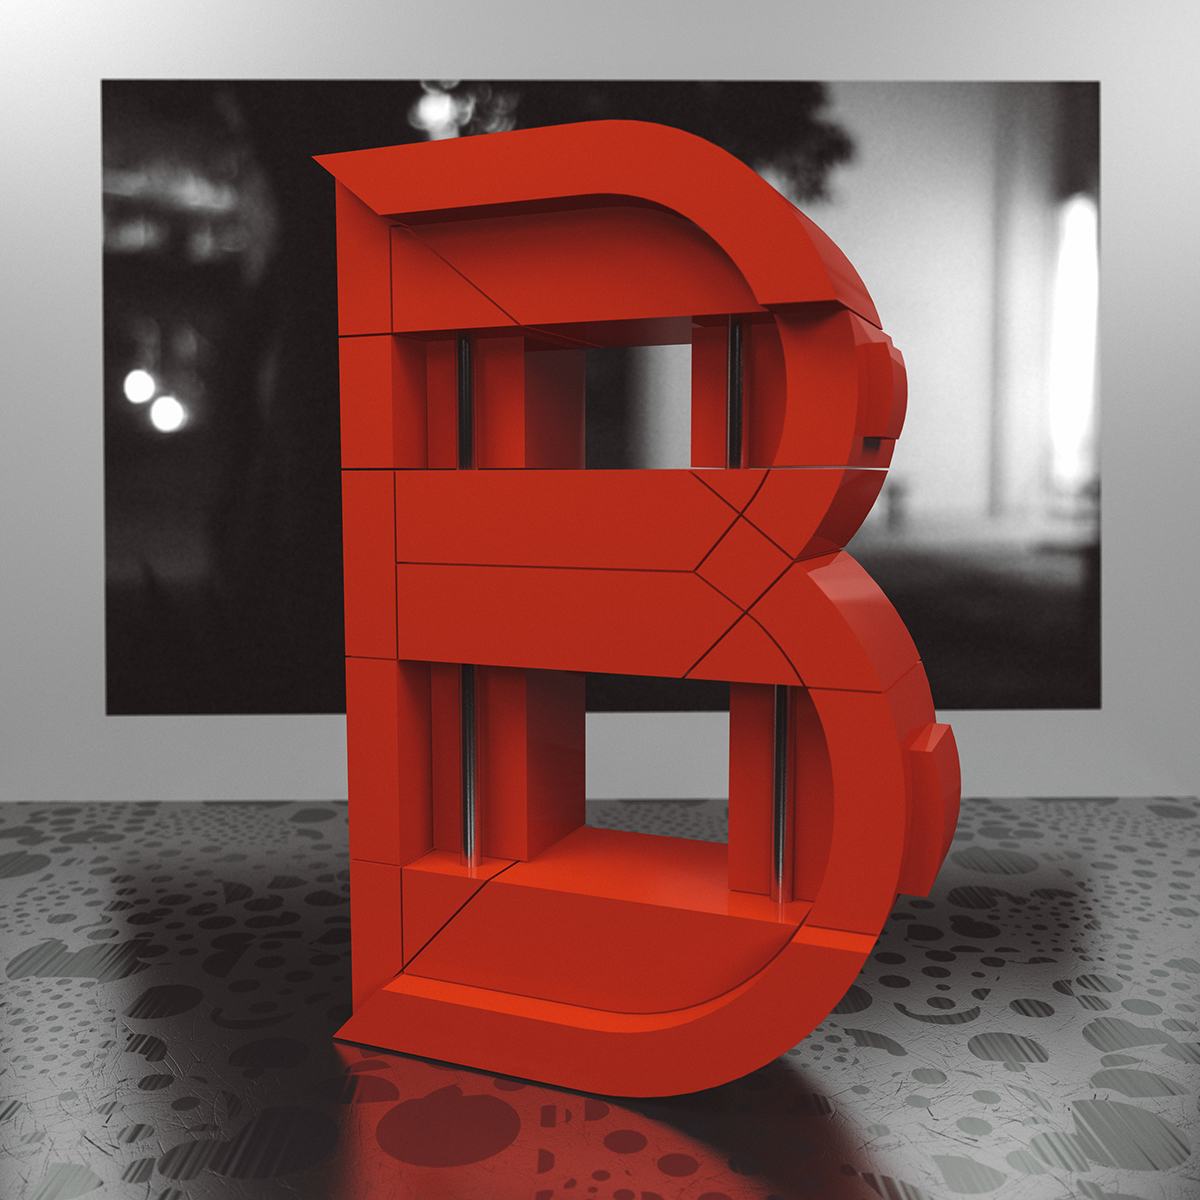 type letter Letterform 3D CG vray c4d material light lighting